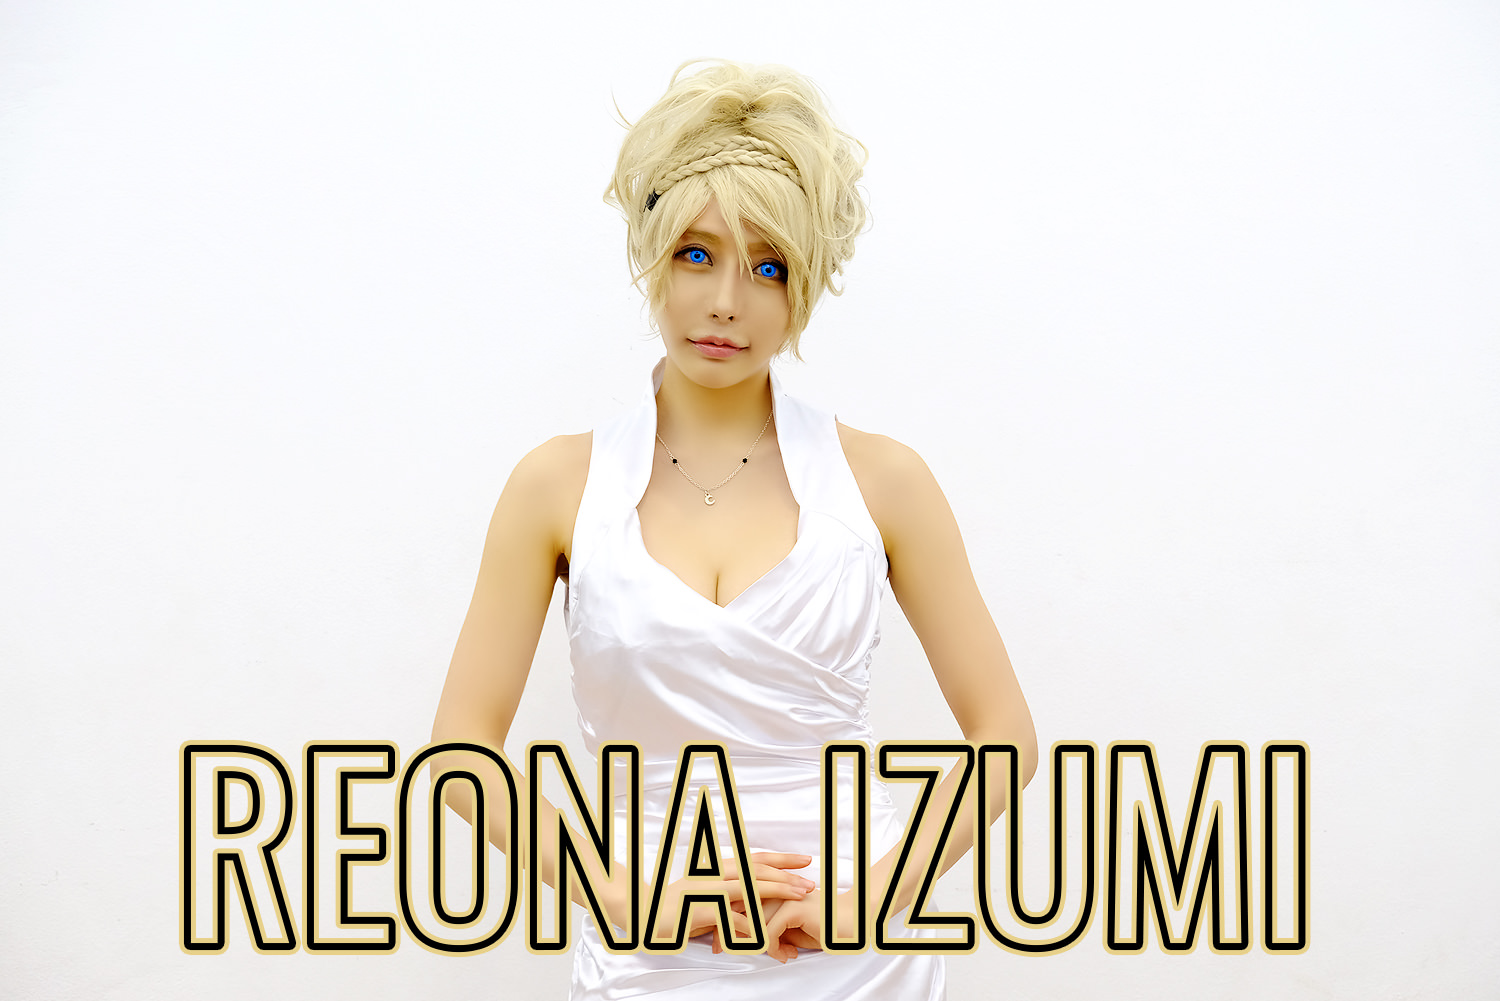 Interview | คุยกับ Reona Izumi สาวคอสเพลย์ลุคเซ็กซี่ในงาน Maruya #22